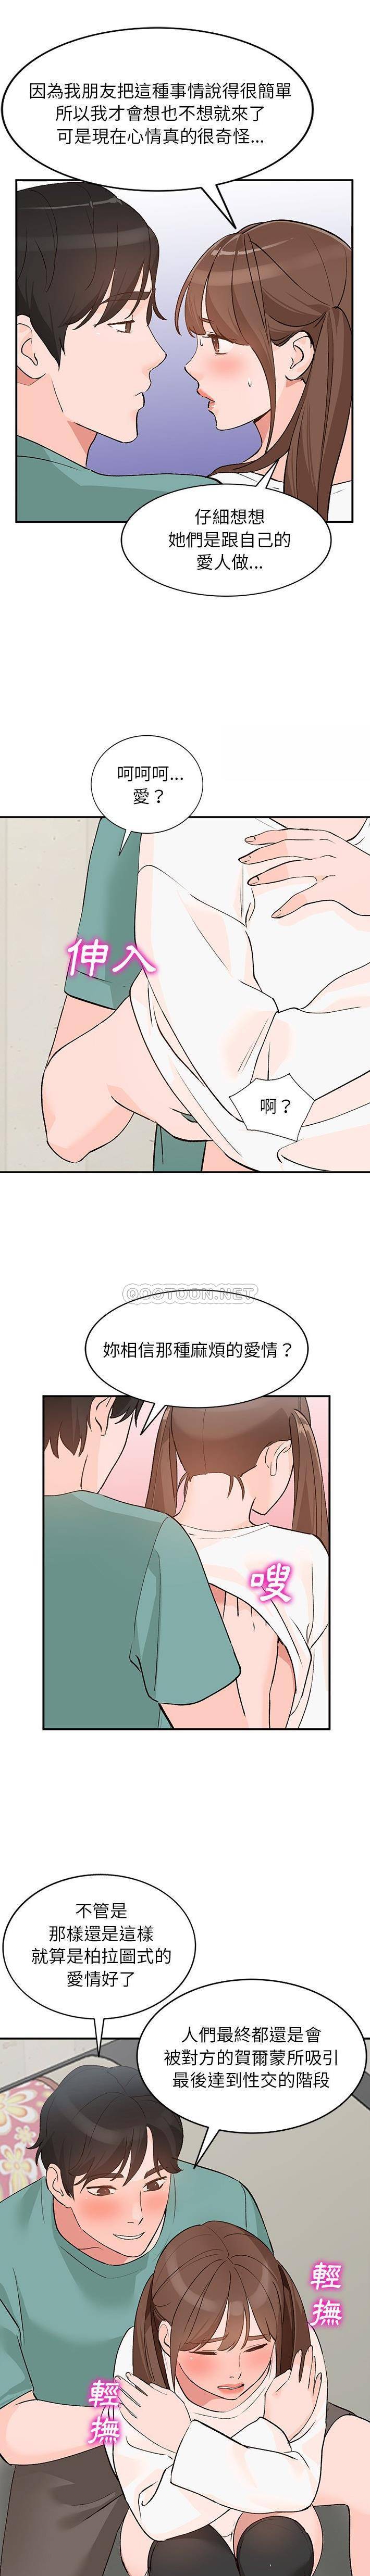 韩国污漫画 她們的小秘密(小鎮上的女人們) 第16话 1